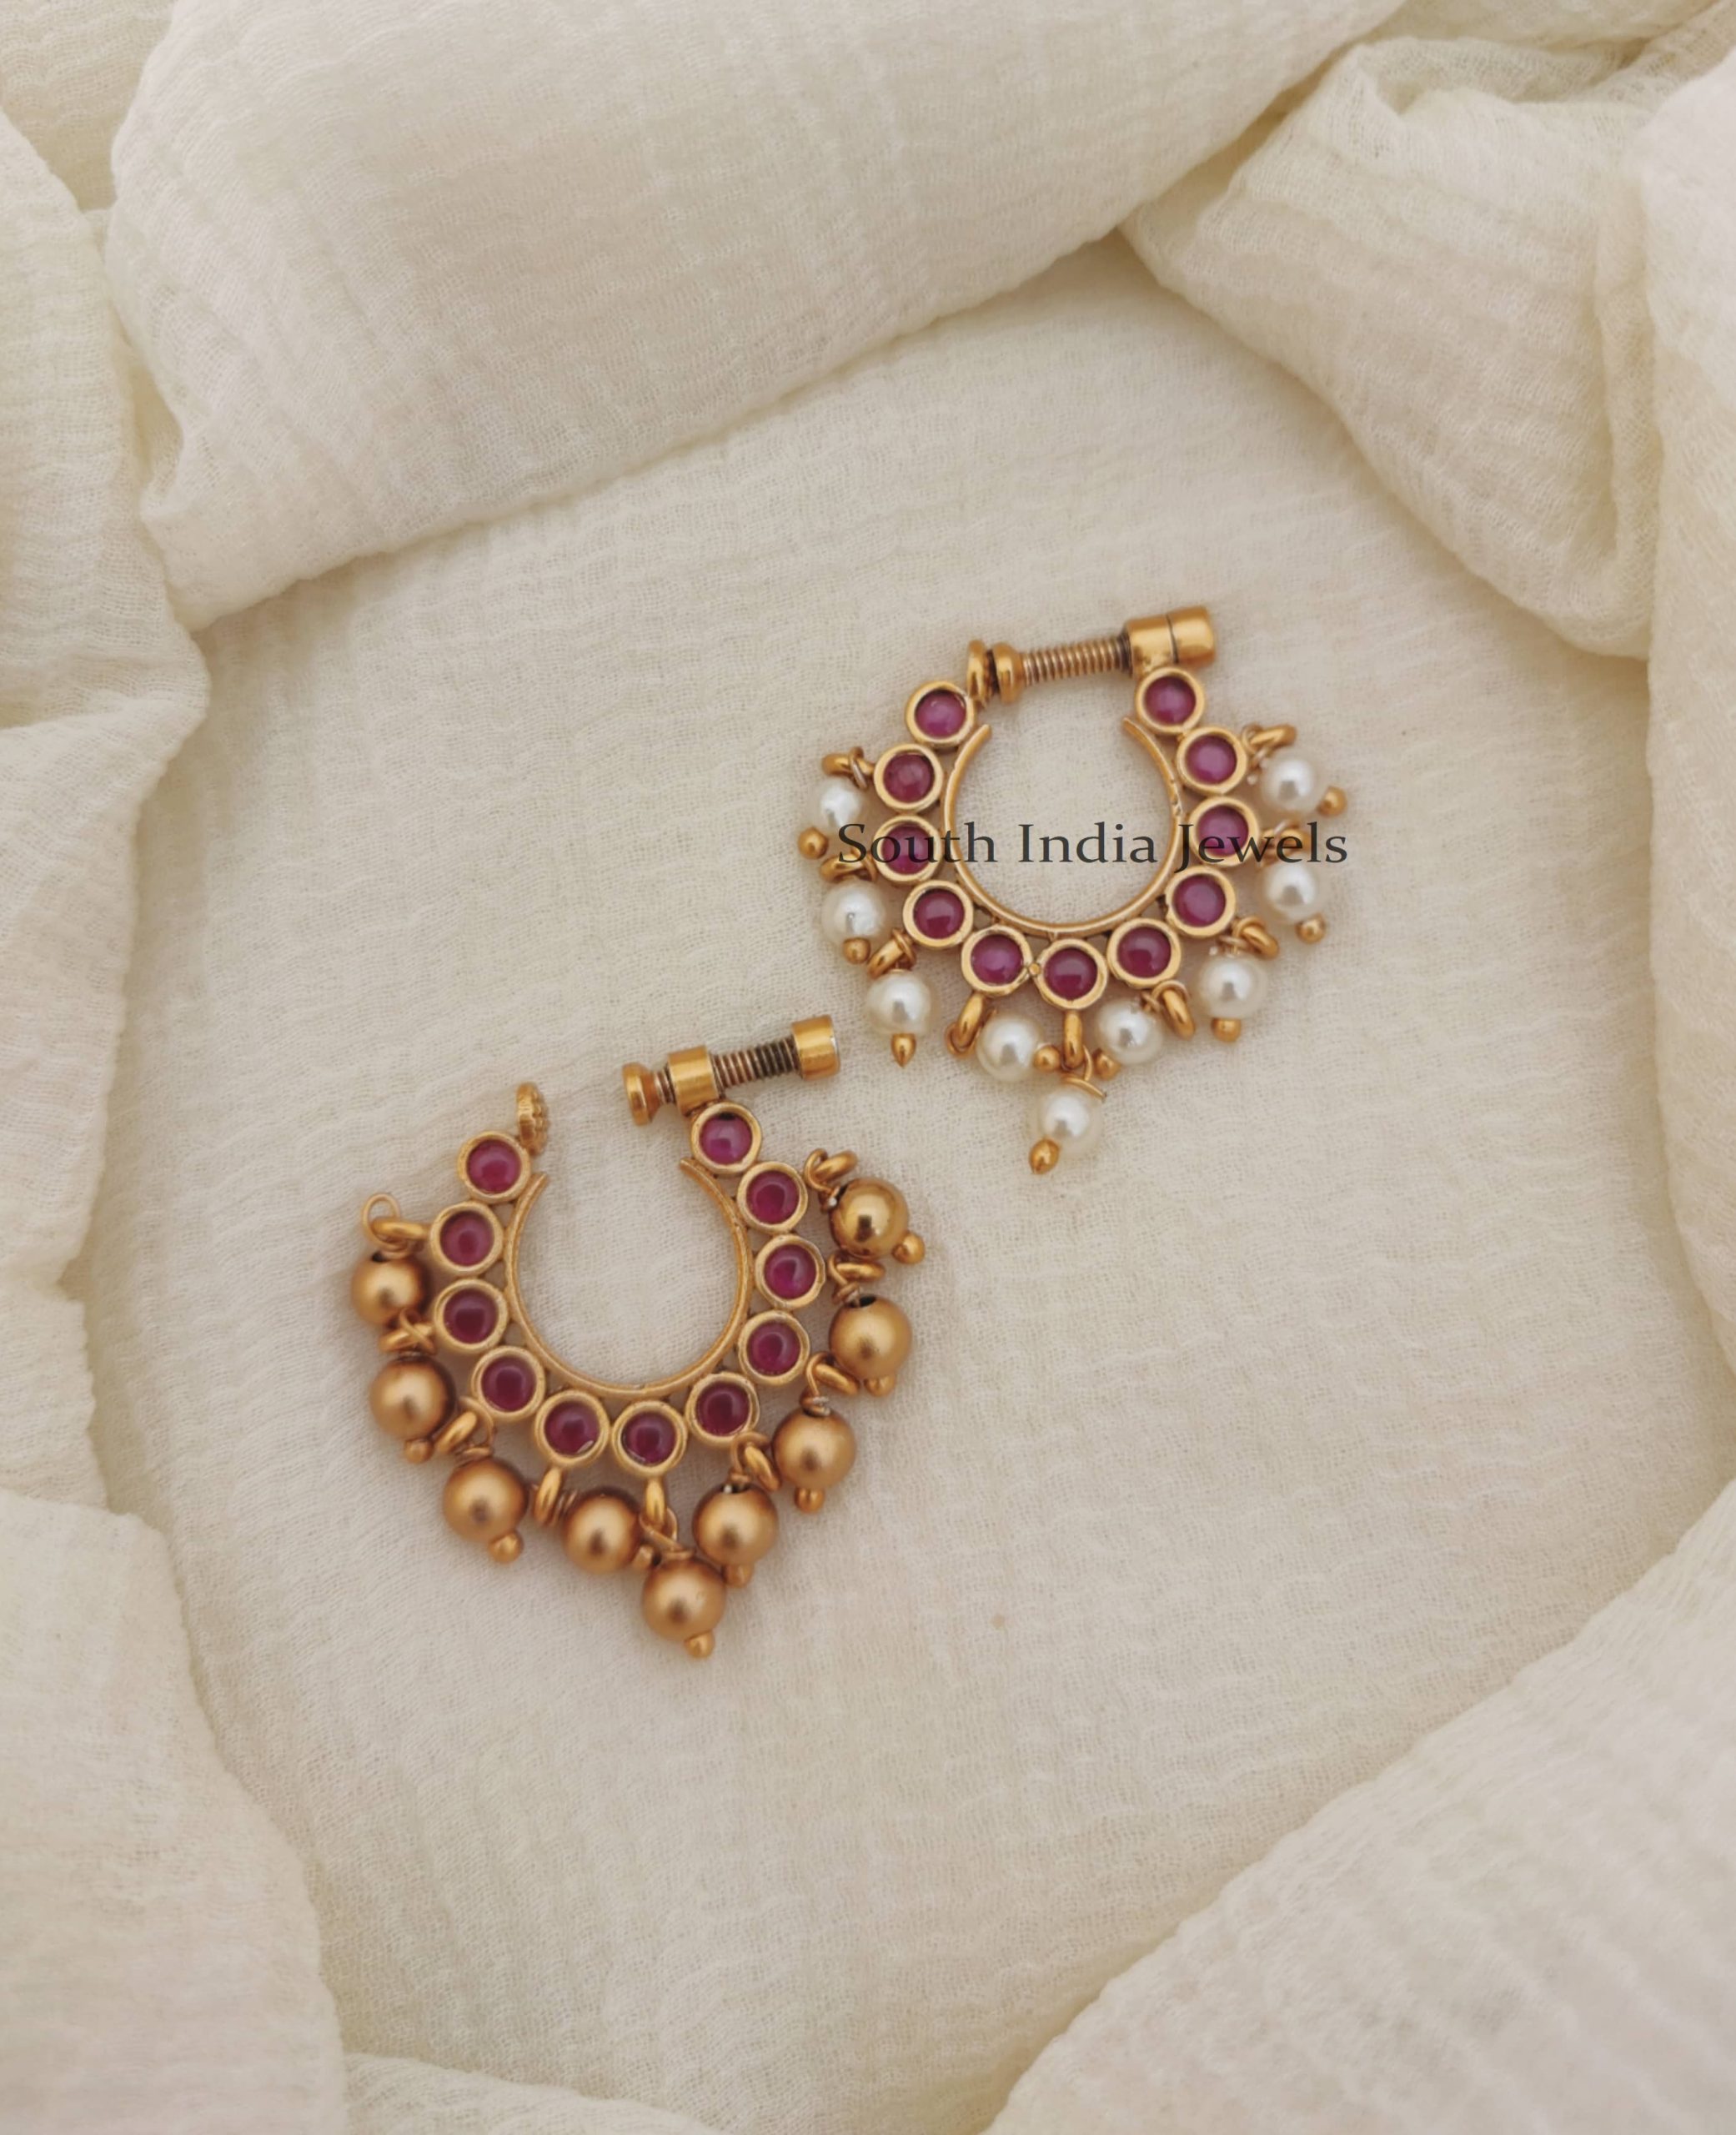 Nose Pin | Imitation Nose Pin - South India Jewels